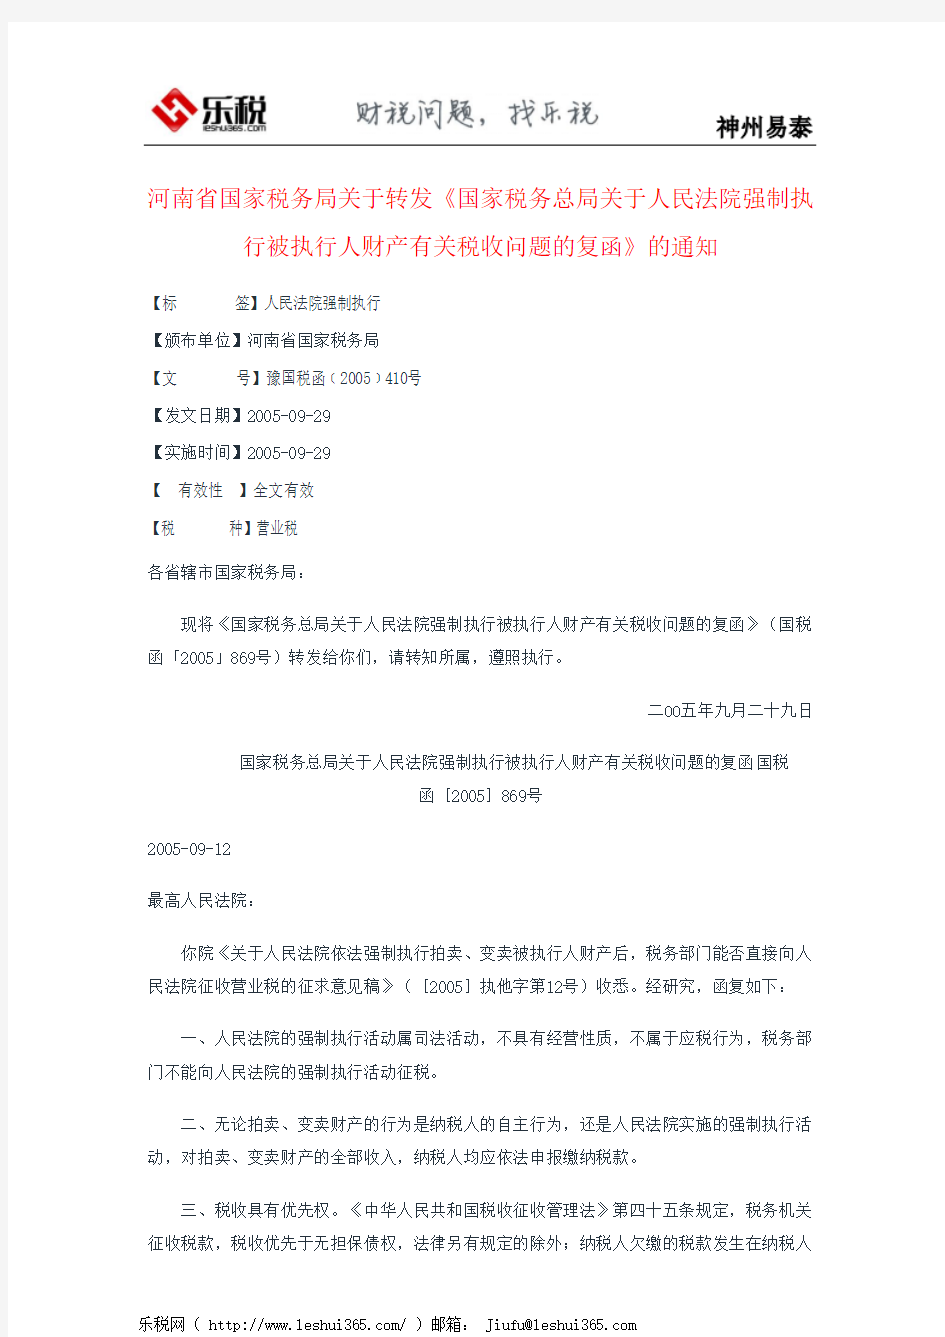 河南省国家税务局关于转发《国家税务总局关于人民法院强制执行被